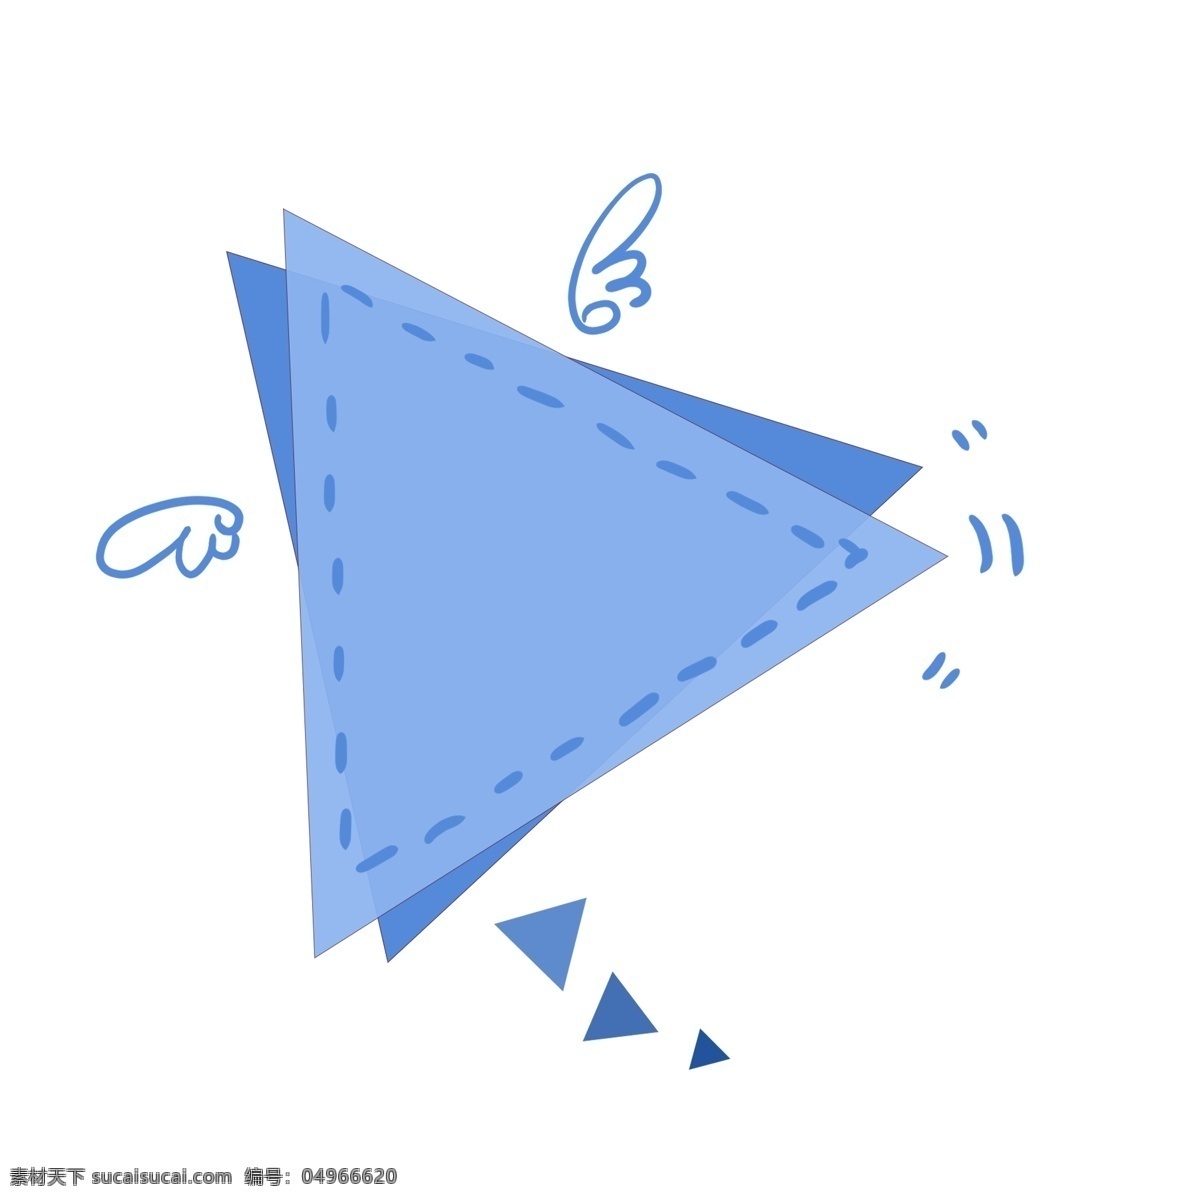 三角形 翅膀 几何 形状 对话框 气泡 海报 广告 商业招贴 插图 蓝色 冷色 灵动 活泼 对话